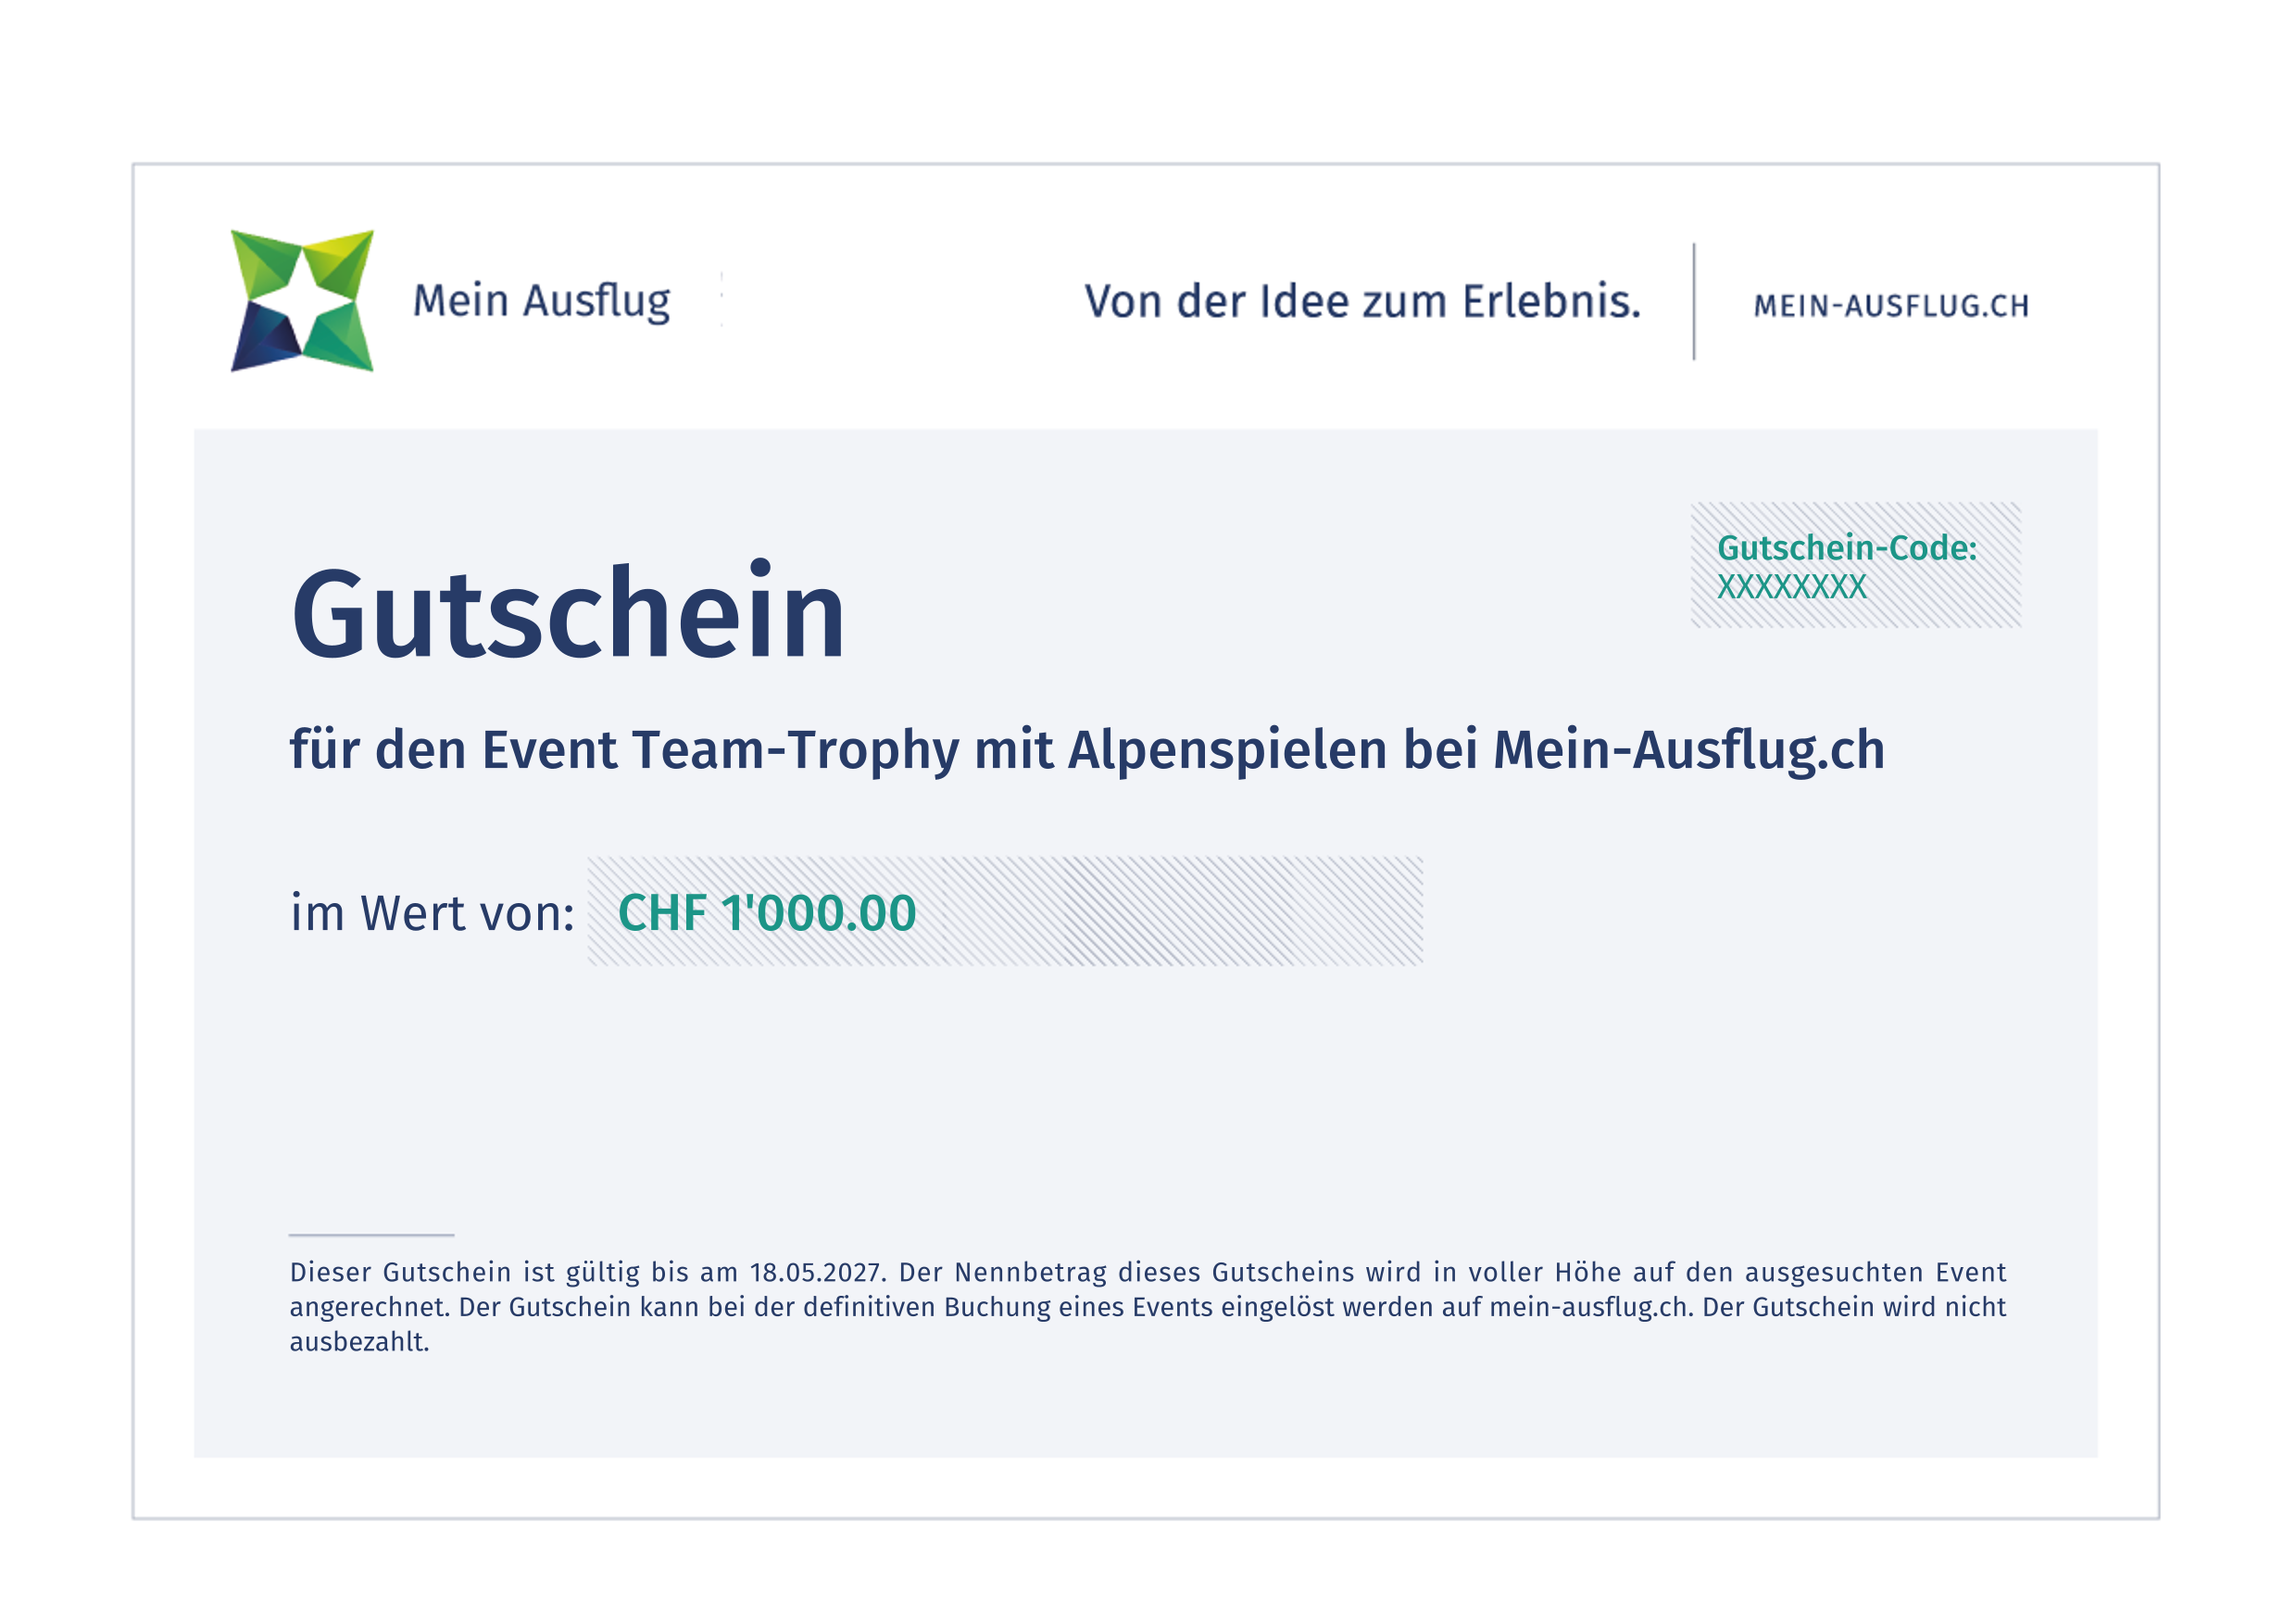 Team-Trophy mit Alpenspielen